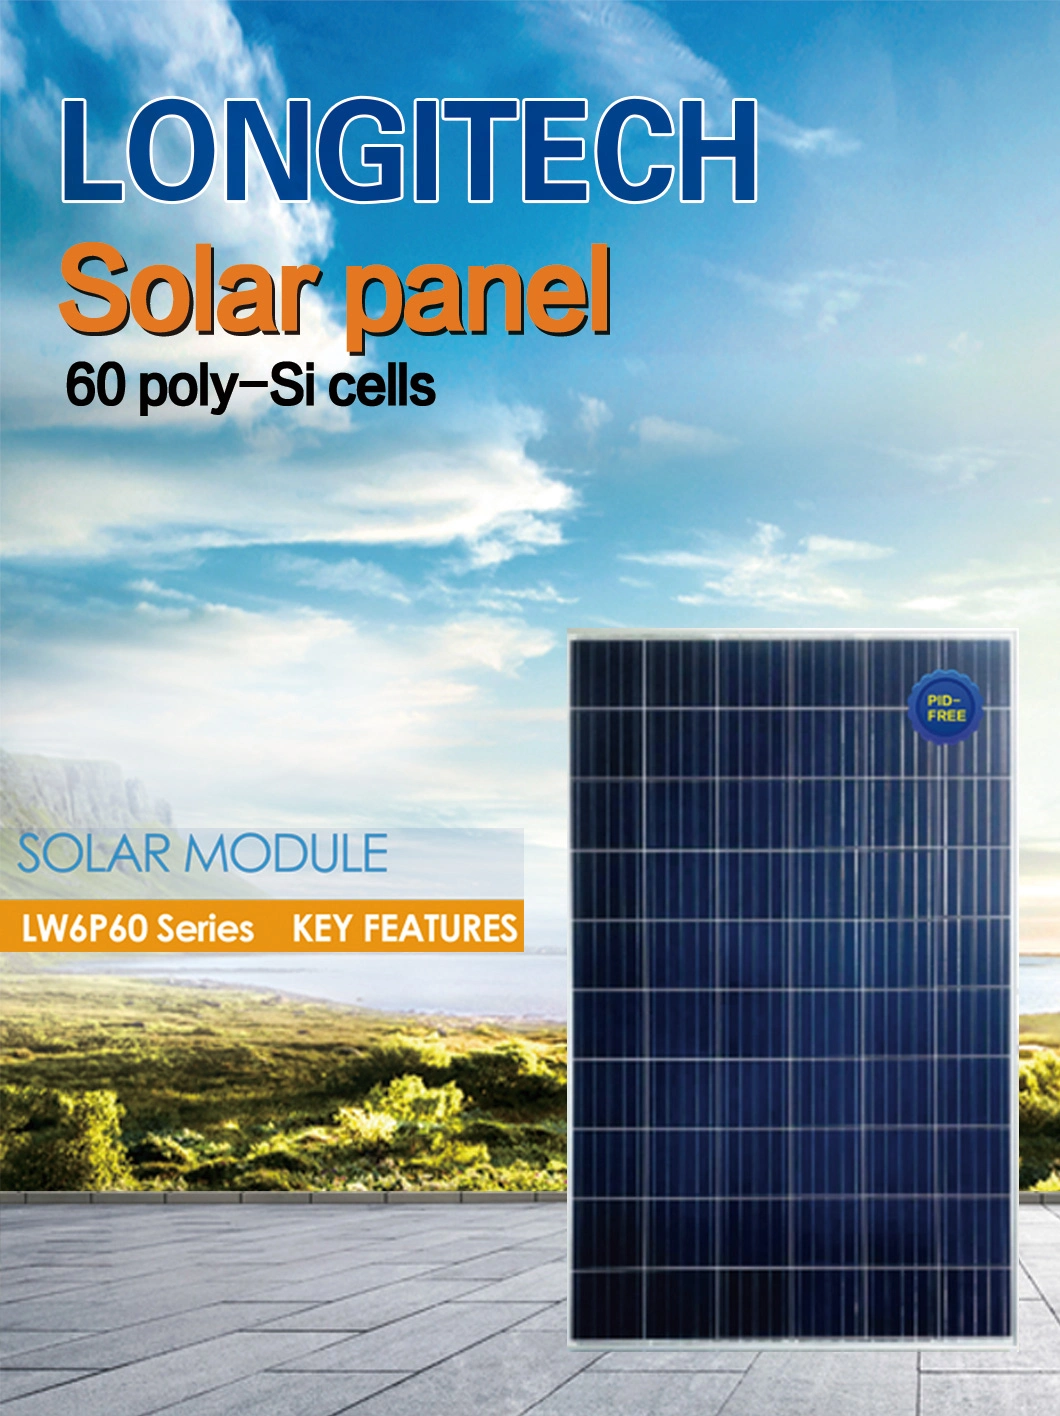 150W 275W 325W 340W 350W 360W 500W 340W PV Solar Panels in Pakistan Price